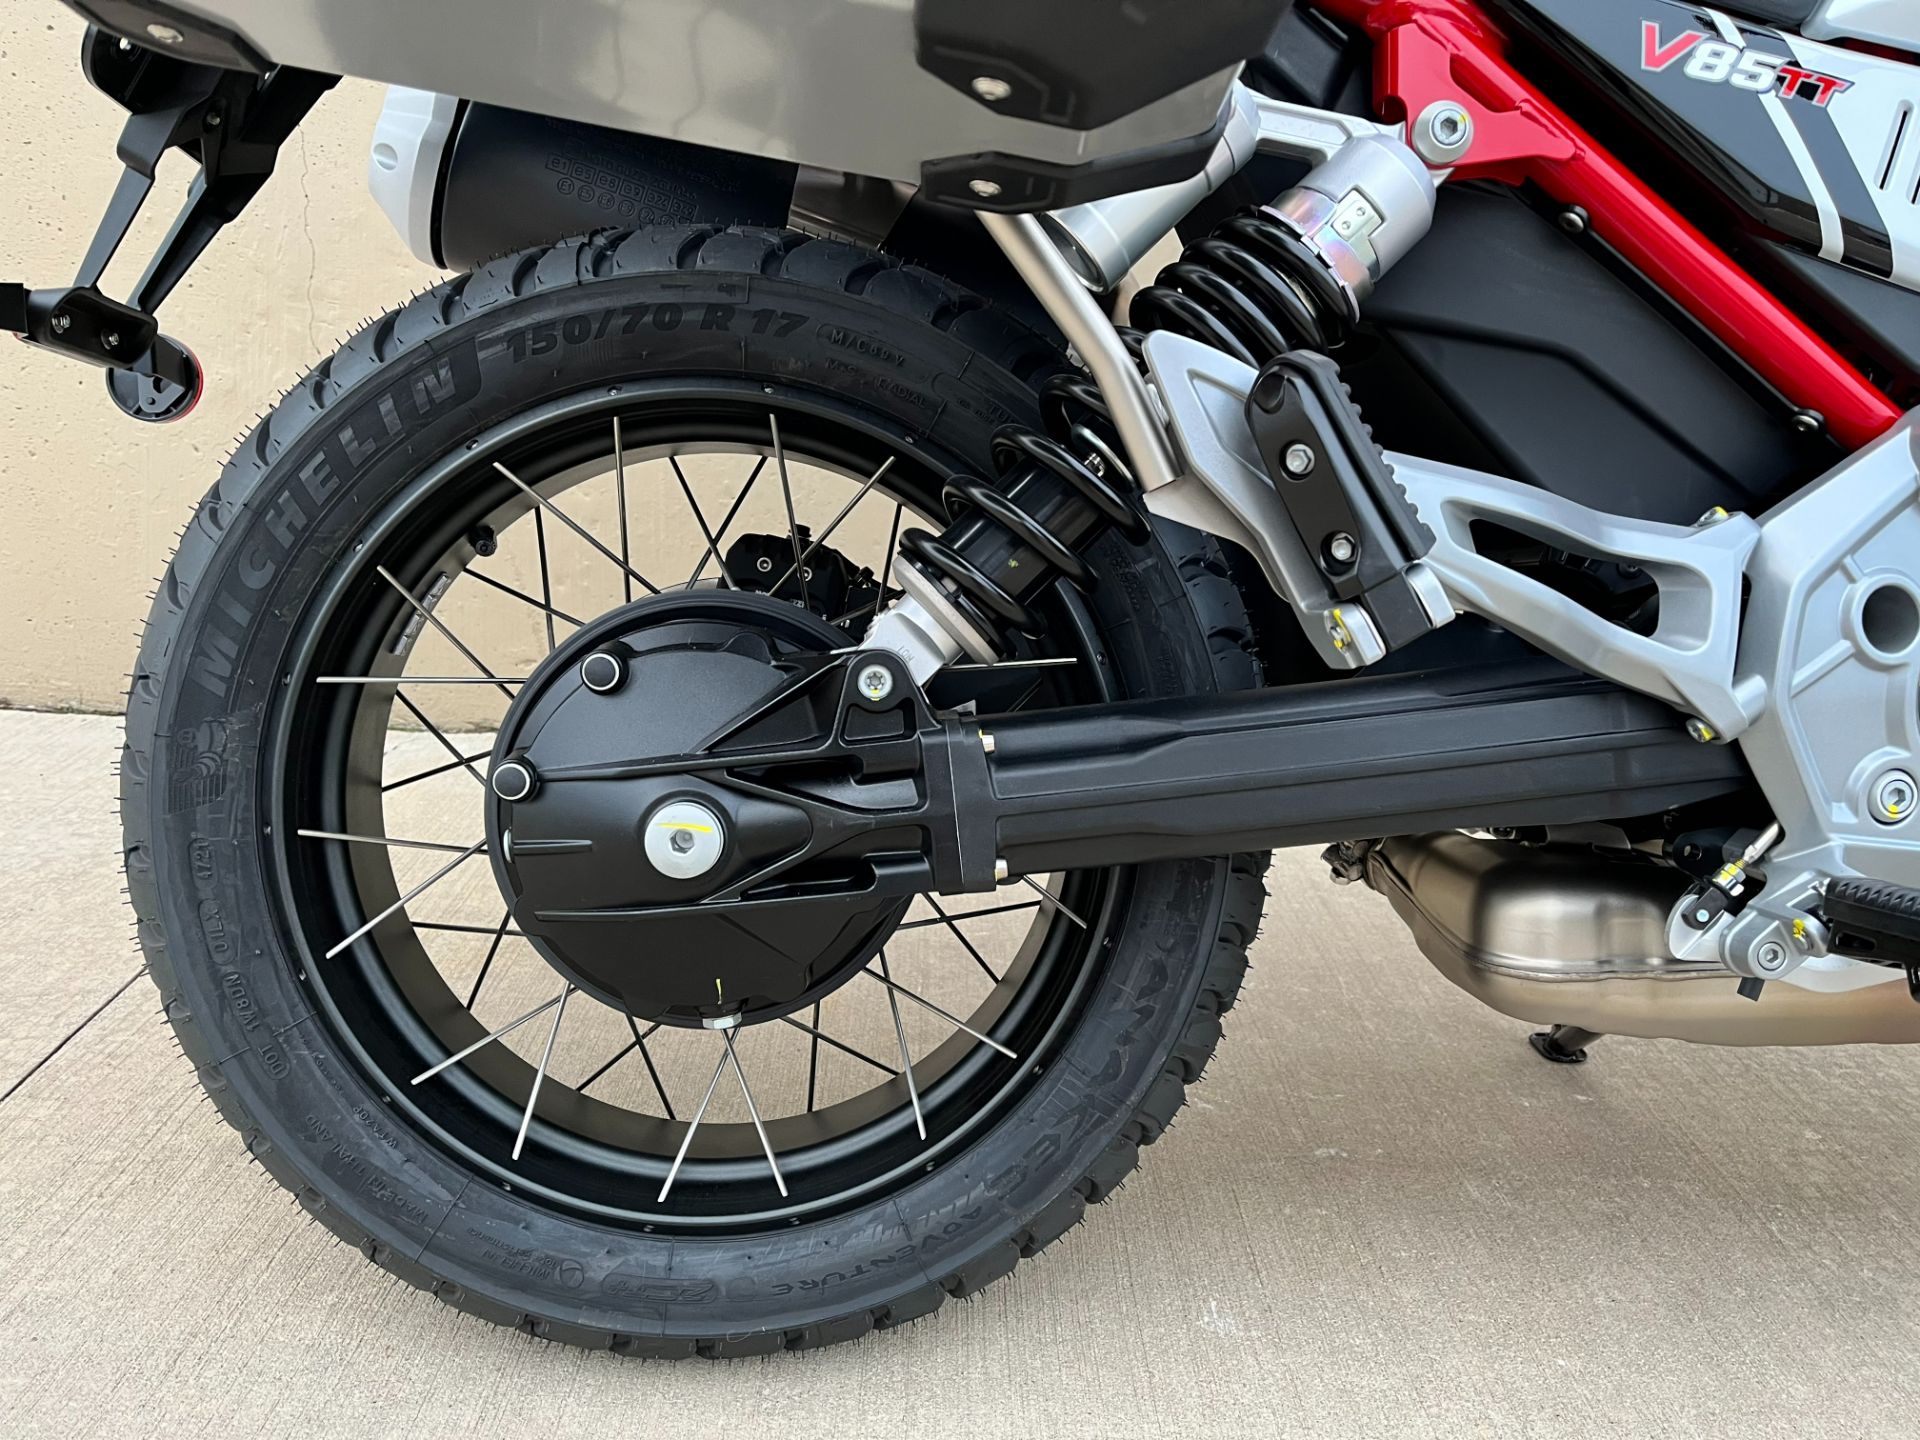 2022 Moto Guzzi V85 TT Adventure in Roselle, Illinois - Photo 15